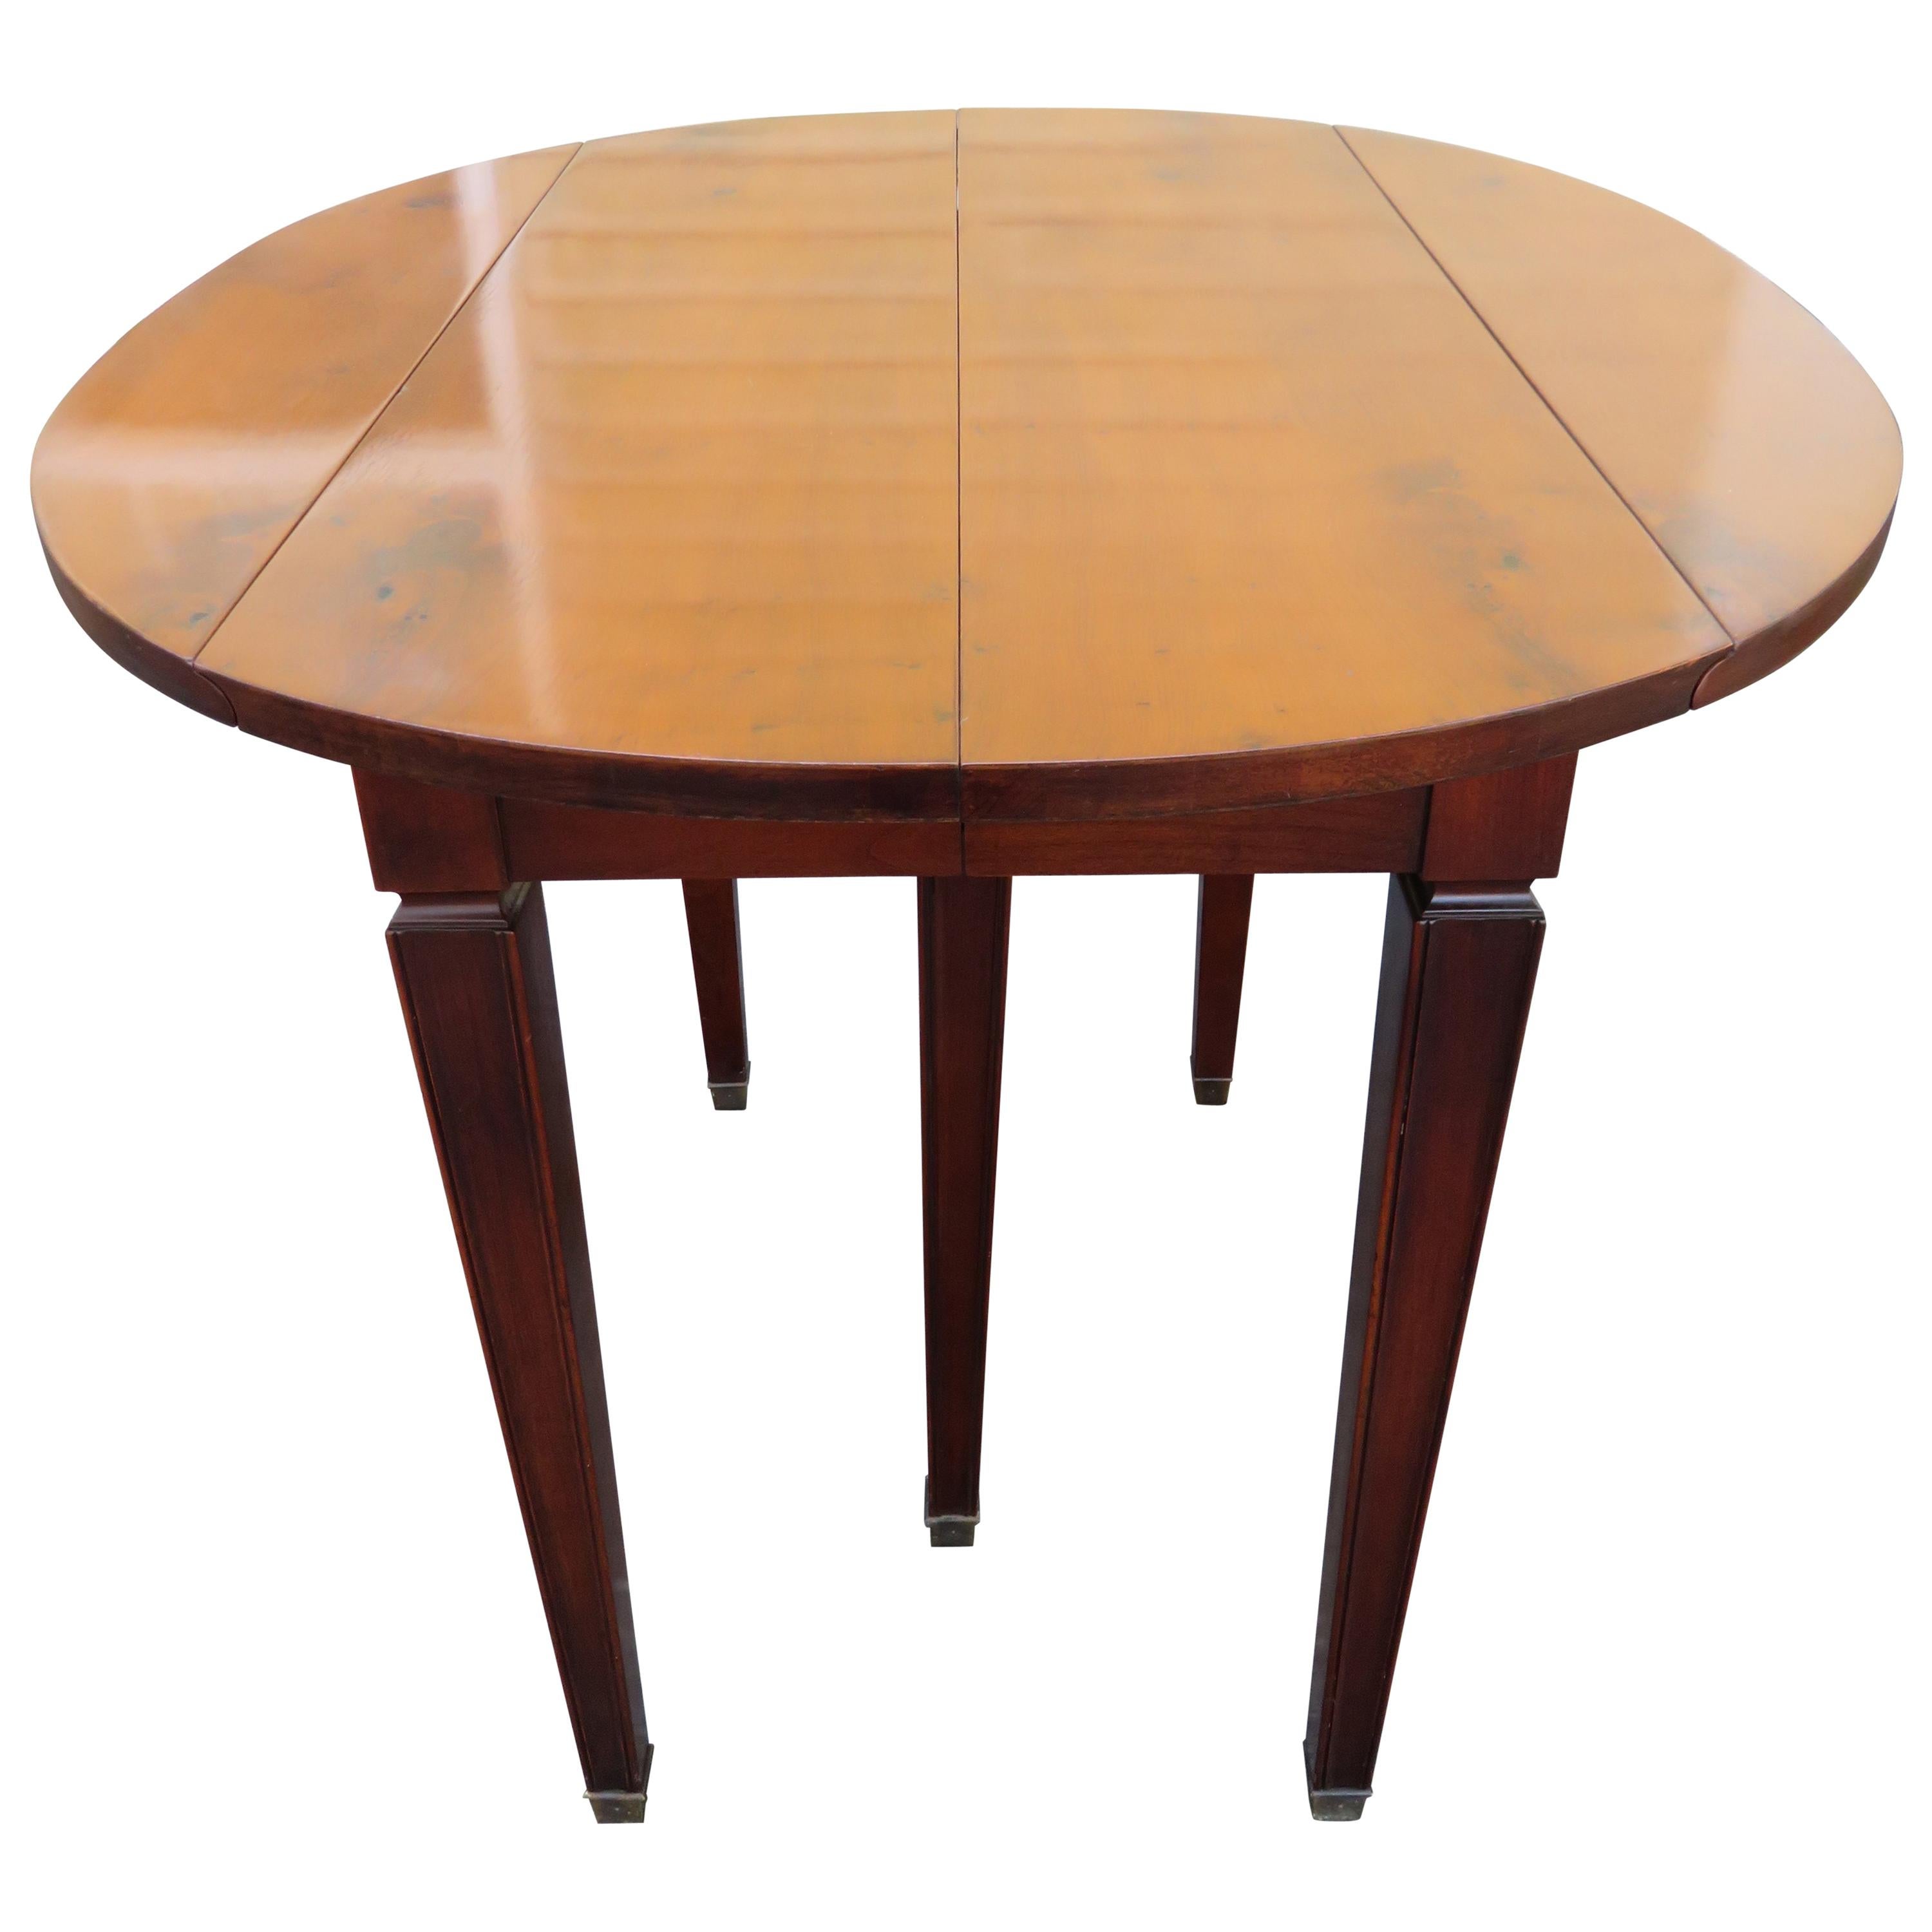 Wonderful Widdicomb Petite Drop Leaf Dining Table 4 Leaves Mid-Century Modern